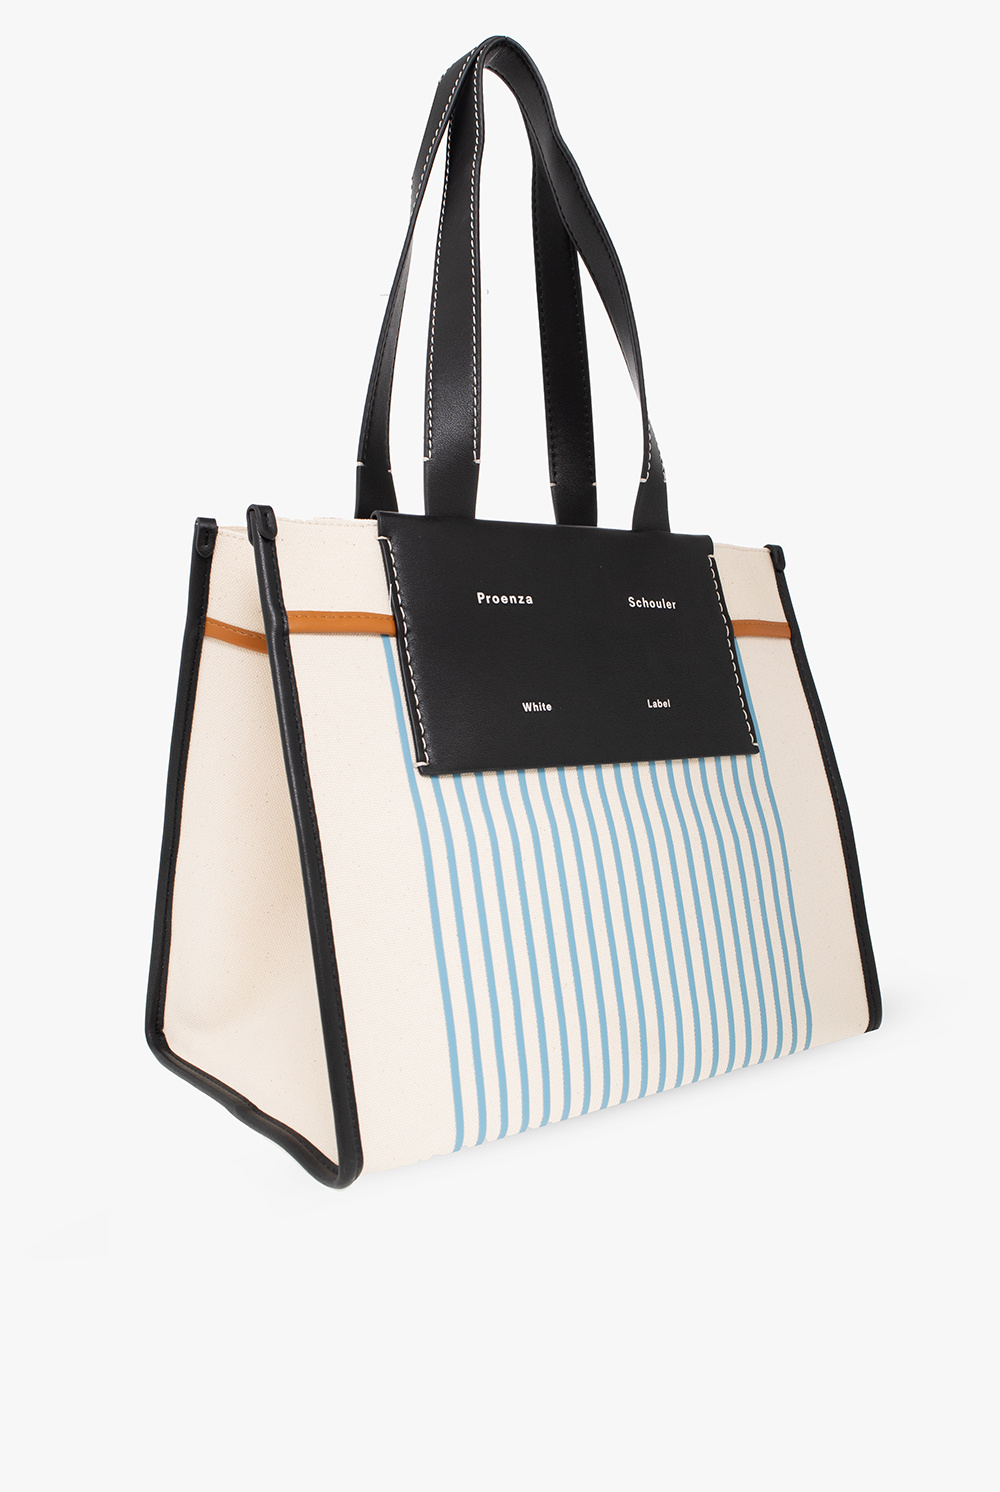 Proenza Schouler White Label ‘Morris Large’ shoulder bag